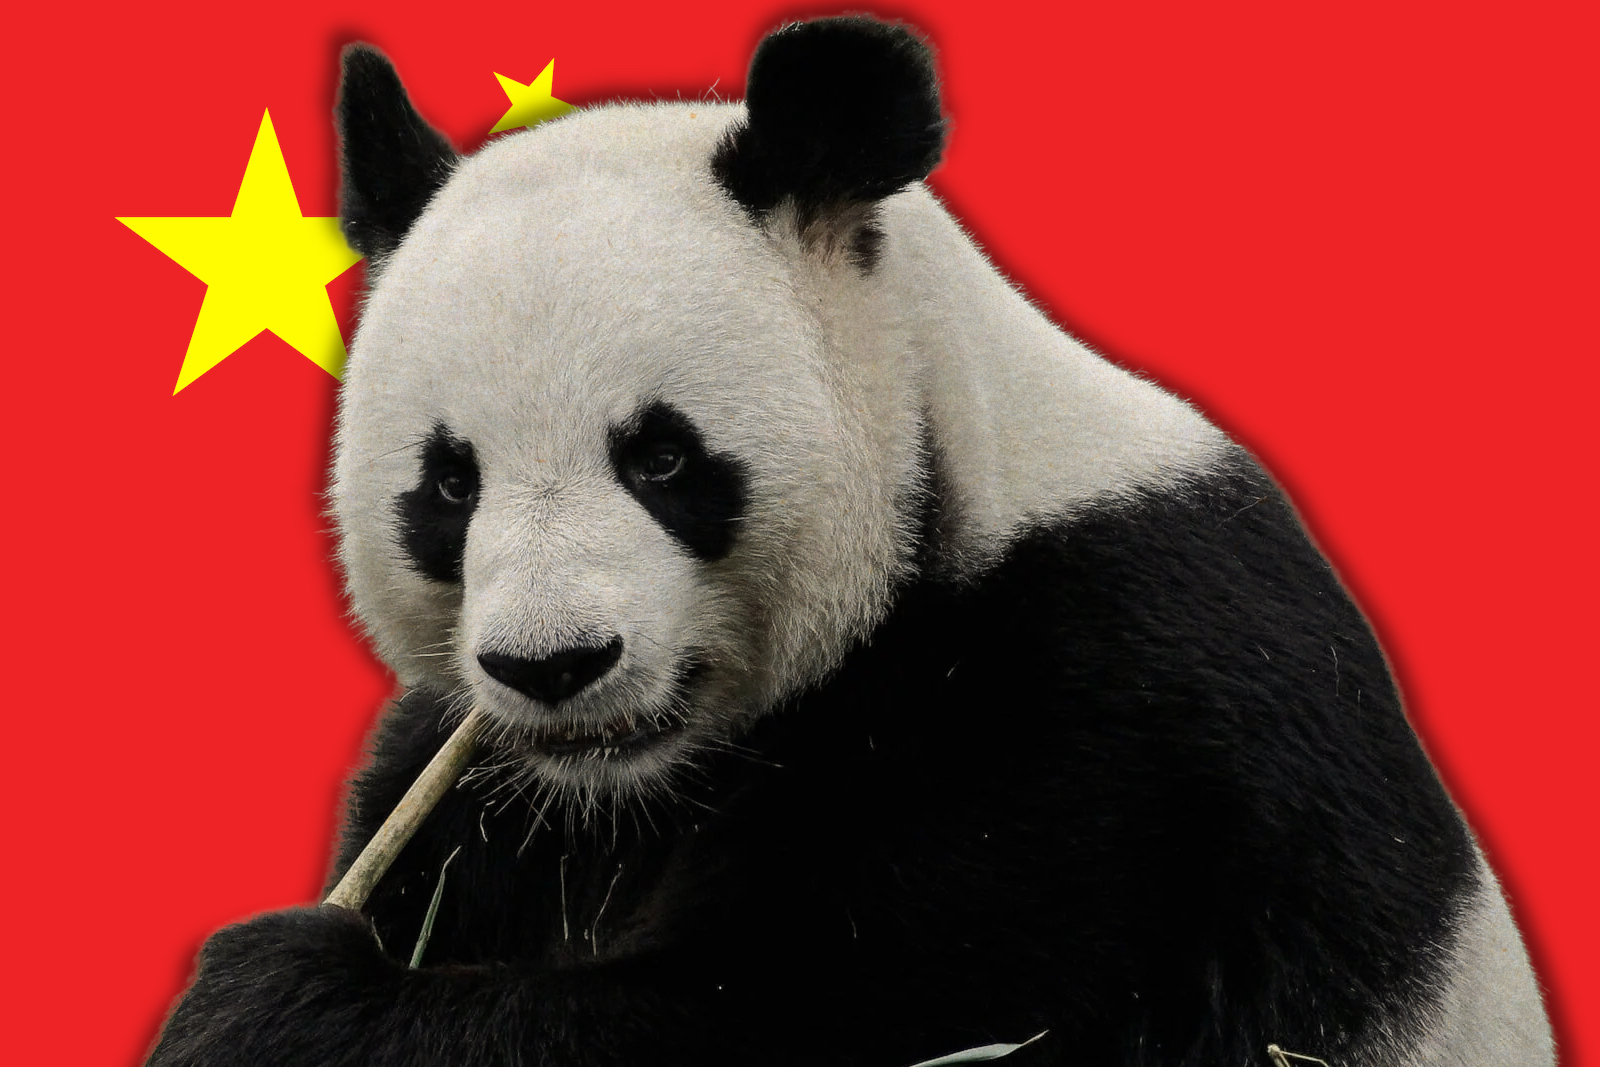 Panda China flag